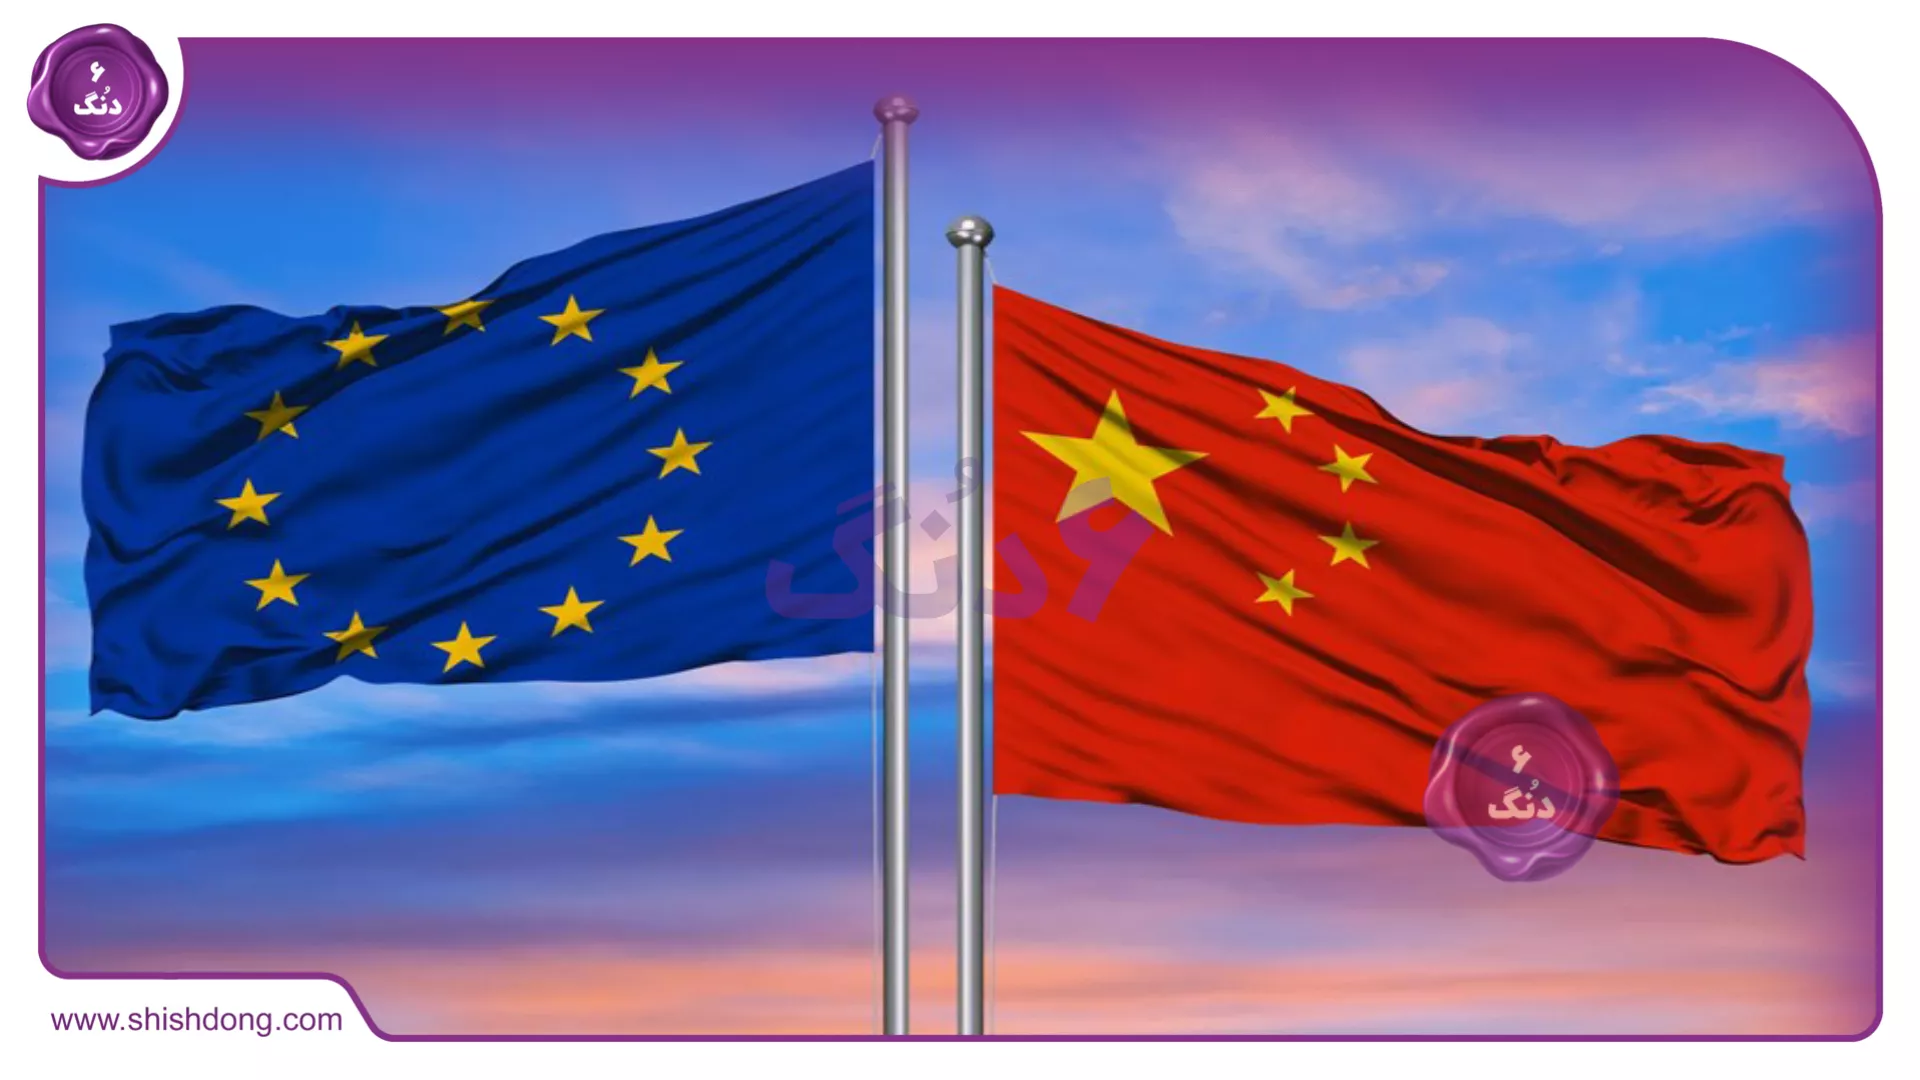 پرچم های چین و انحادیه اروپا